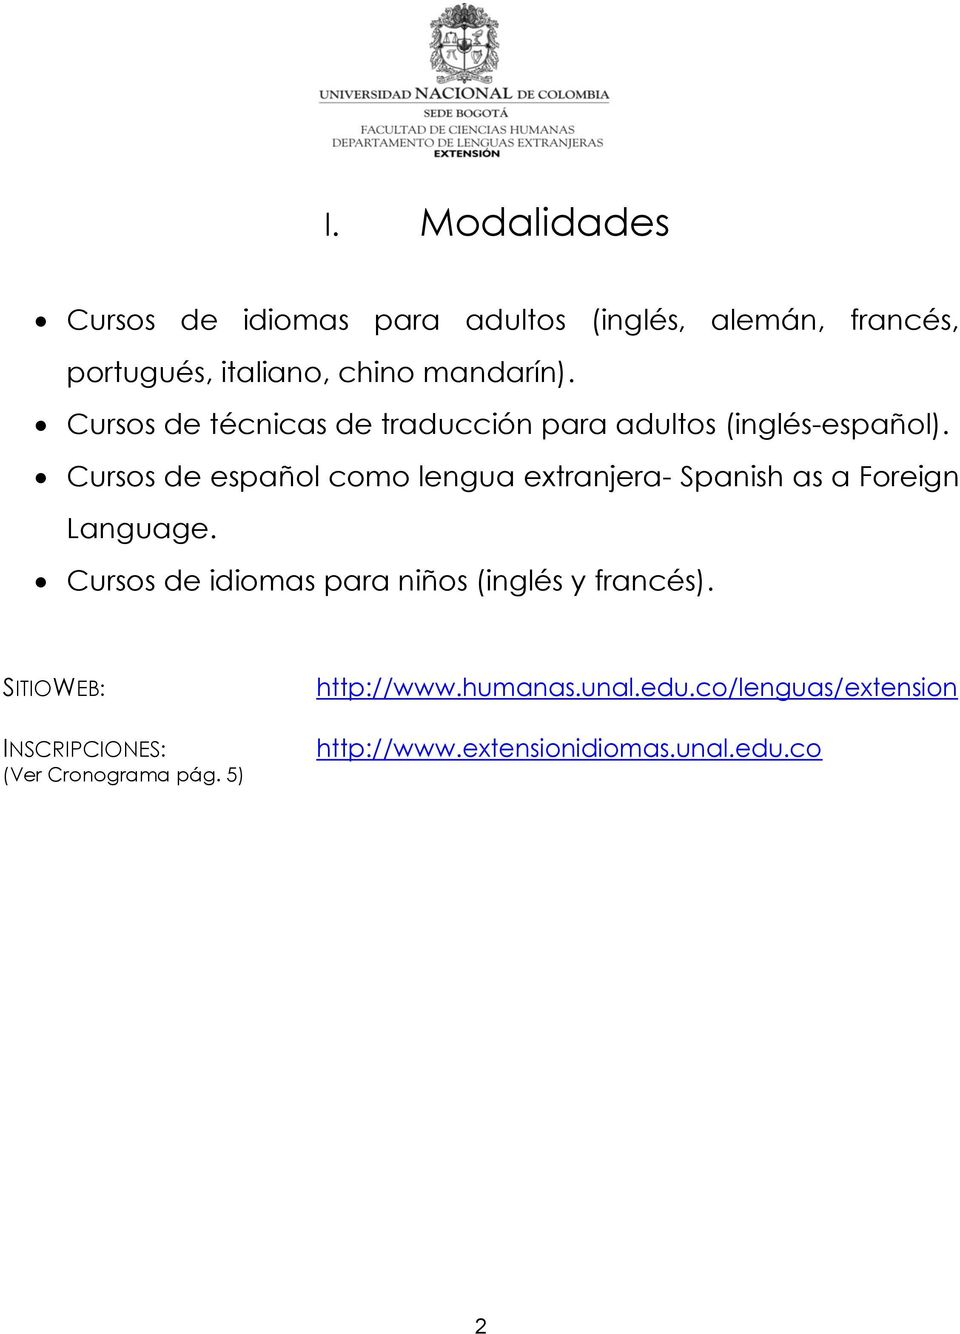 Cursos de español como lengua extranjera- Spanish as a Foreign Language.